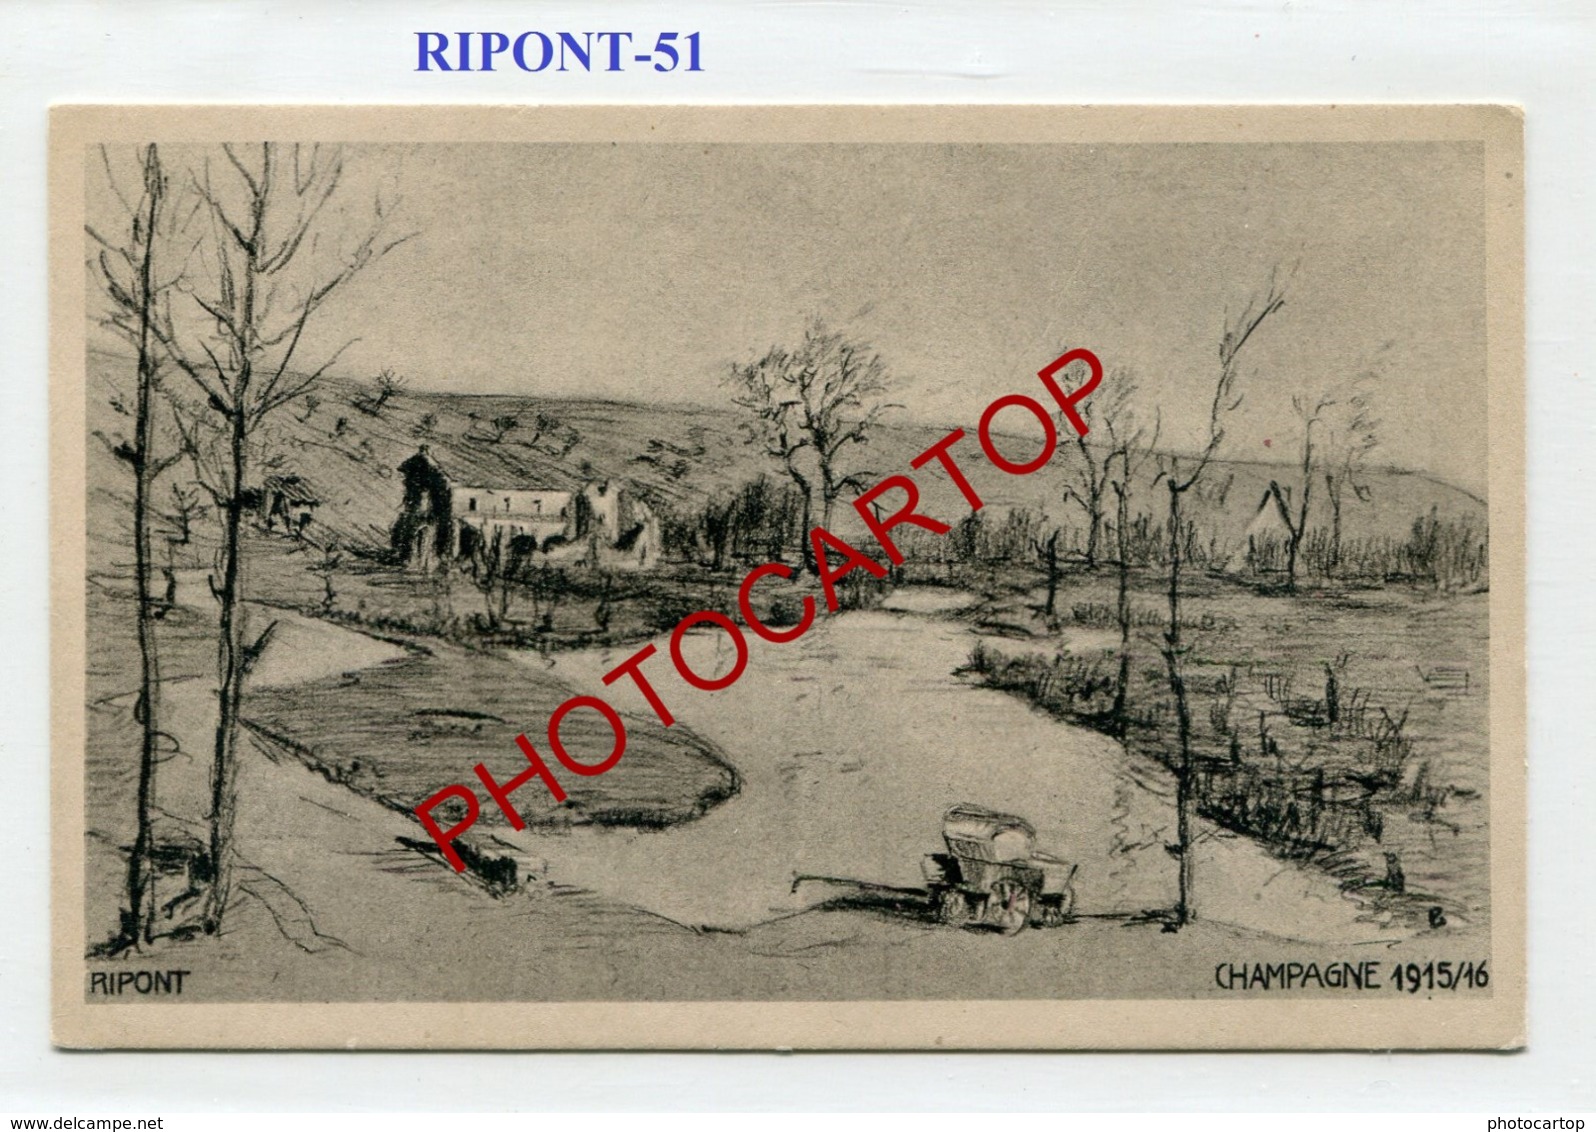 RIPONT-Dessin-CARTE Imprimee Allemande-Guerre14-18-1WK-France-51-Militaria- - Ville-sur-Tourbe